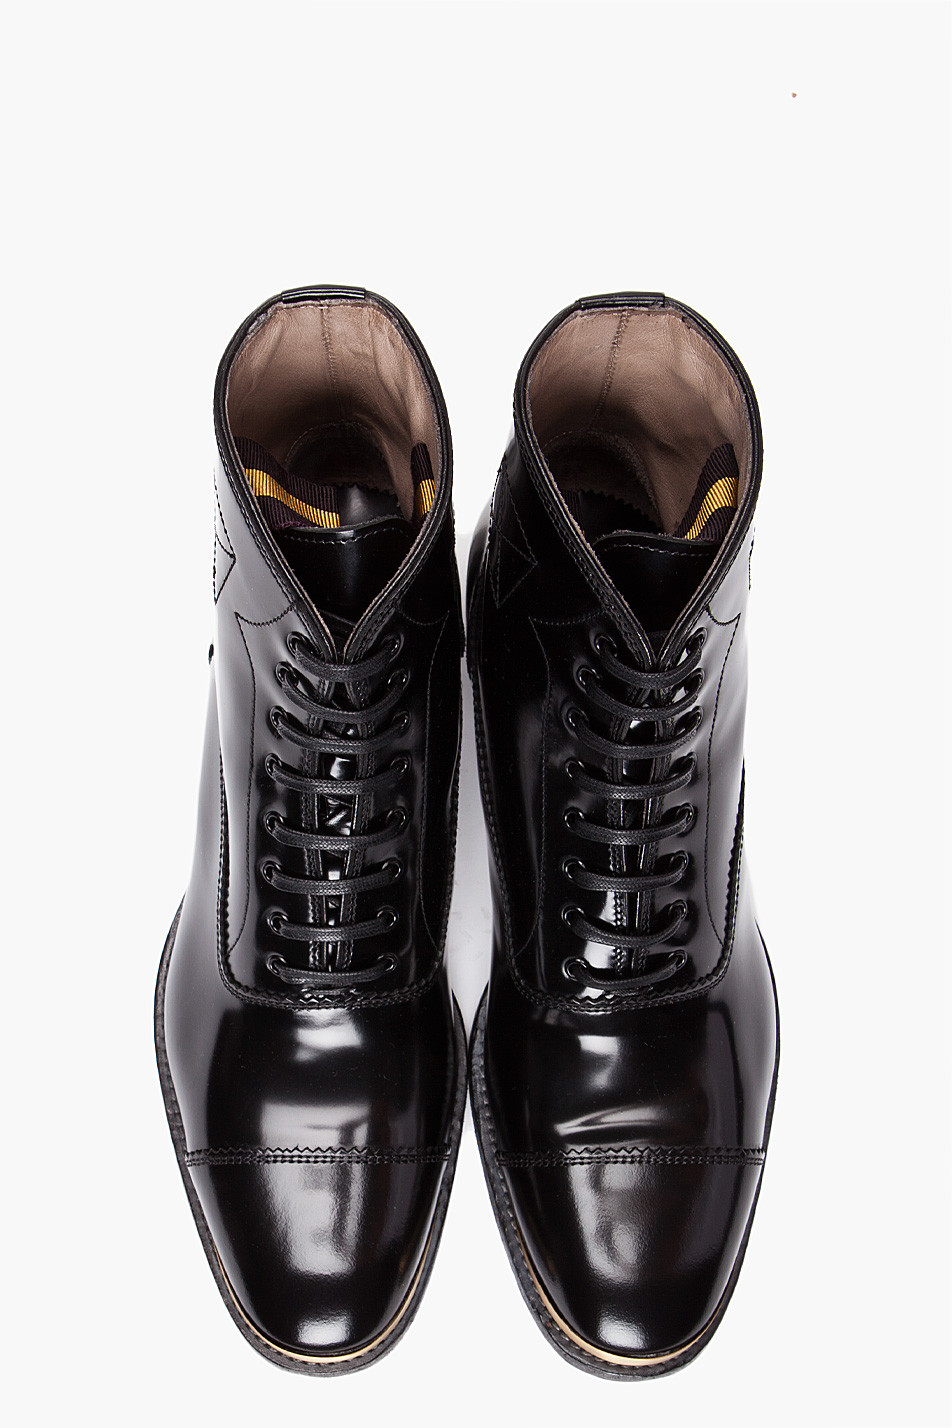 Lyst - Alexander mcqueen Gold Tip Boots in Black for Men